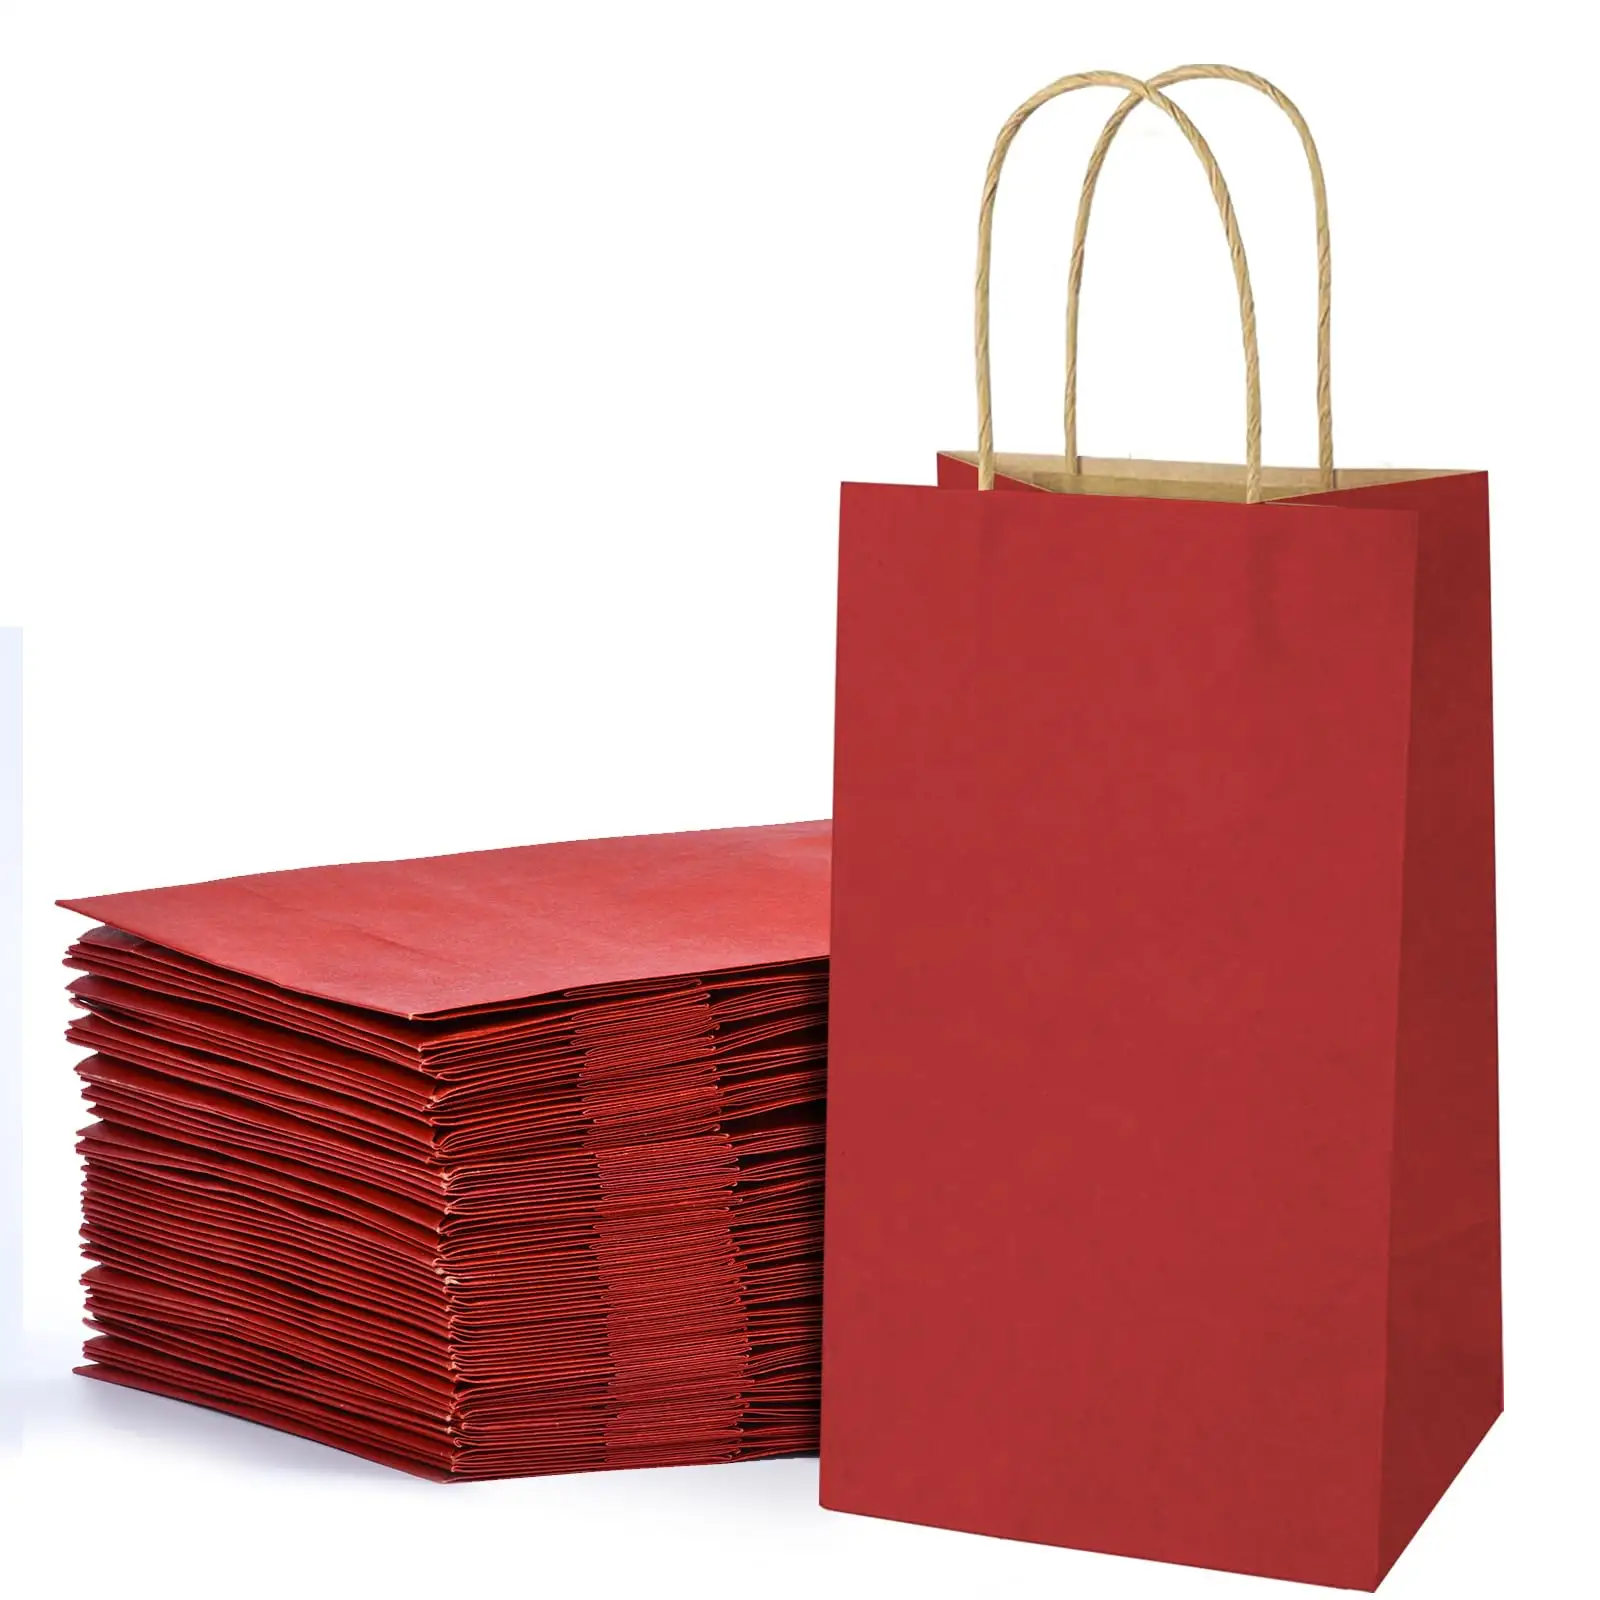 Toptan lüks hediyeler alışveriş kendi logosu ile kuşe kağıt çanta özel baskılı Kraft çanta